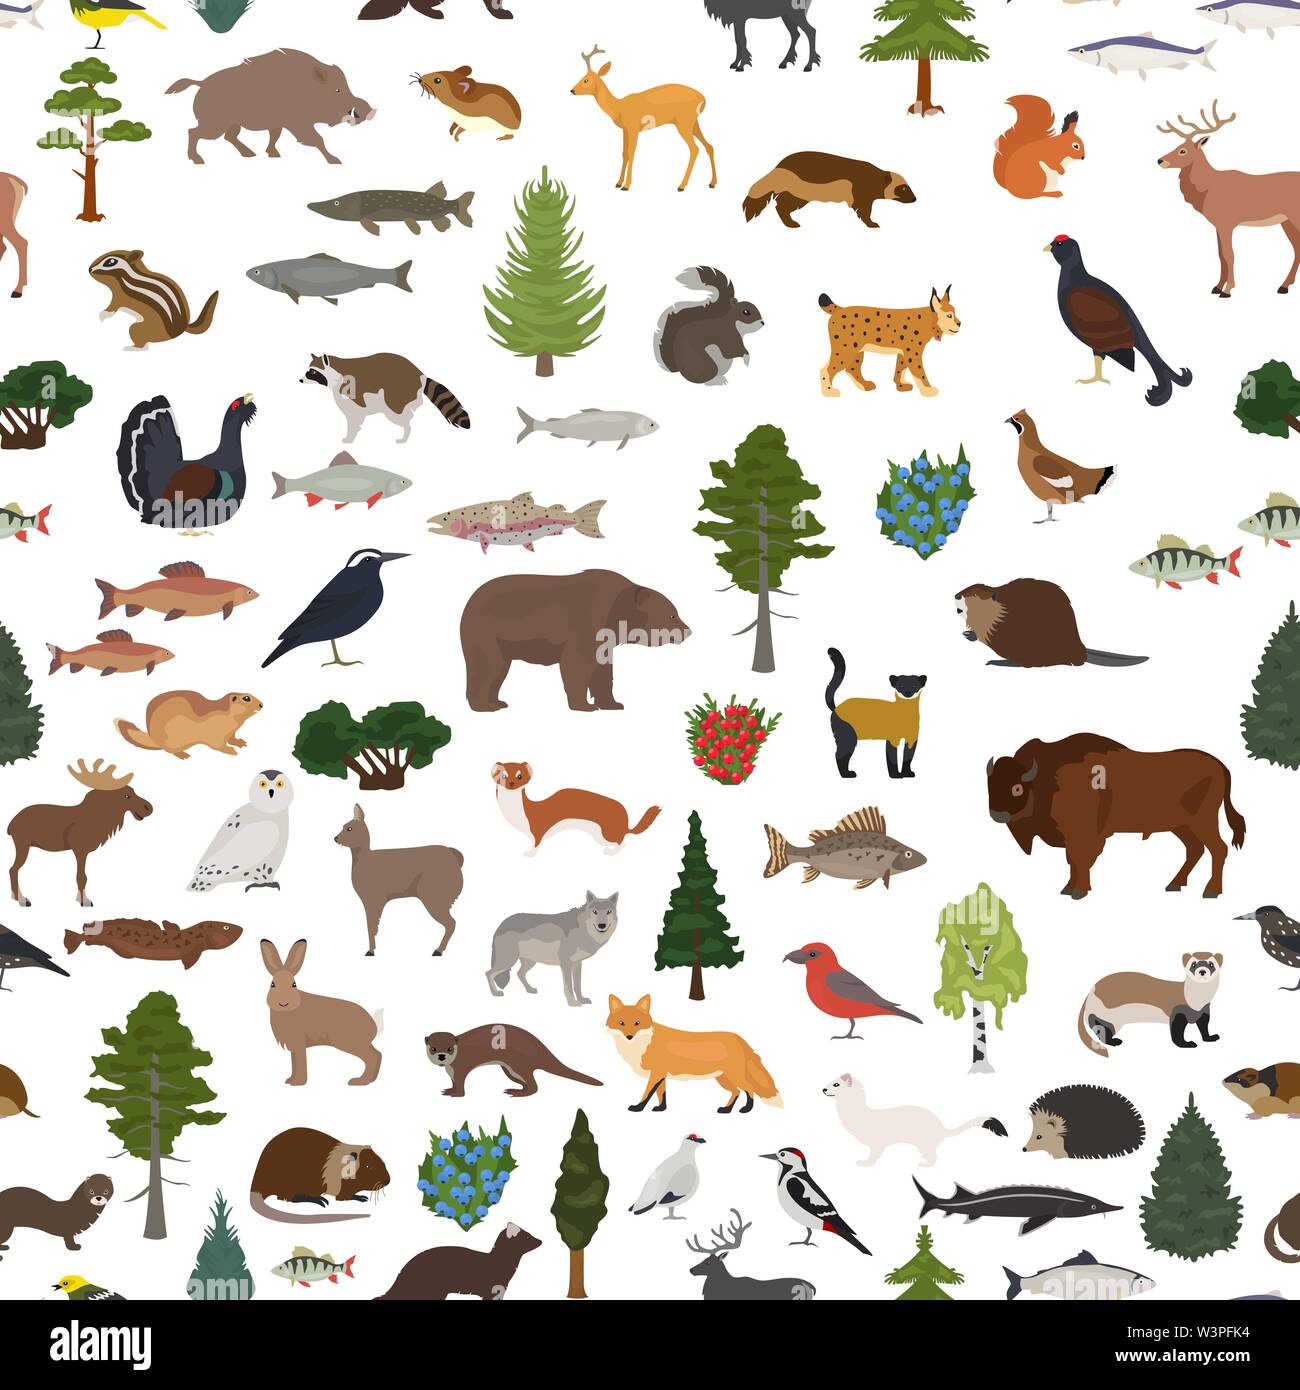 Bioma de taiga, bosque boreal nieve patrón sin fisuras. El ecosistema terrestre mapa del mundo. Animales, pájaros, peces y plantas de diseño. Ilustración vectorial Ilustración del Vector